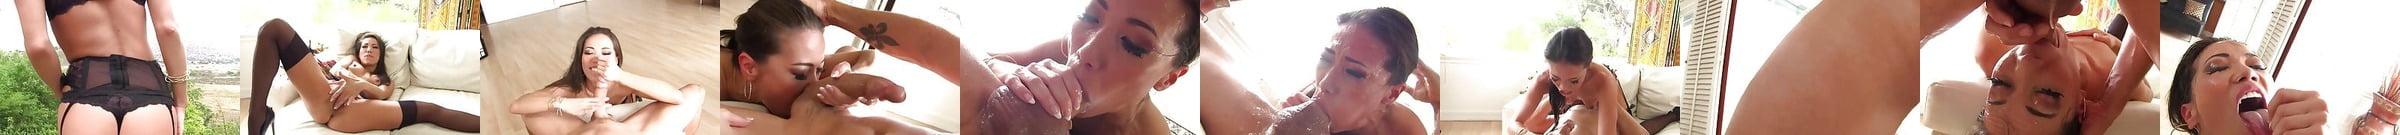 Gorgeous Asian Slut Al Deepthroat Blowjob Free Hd Porn 9d